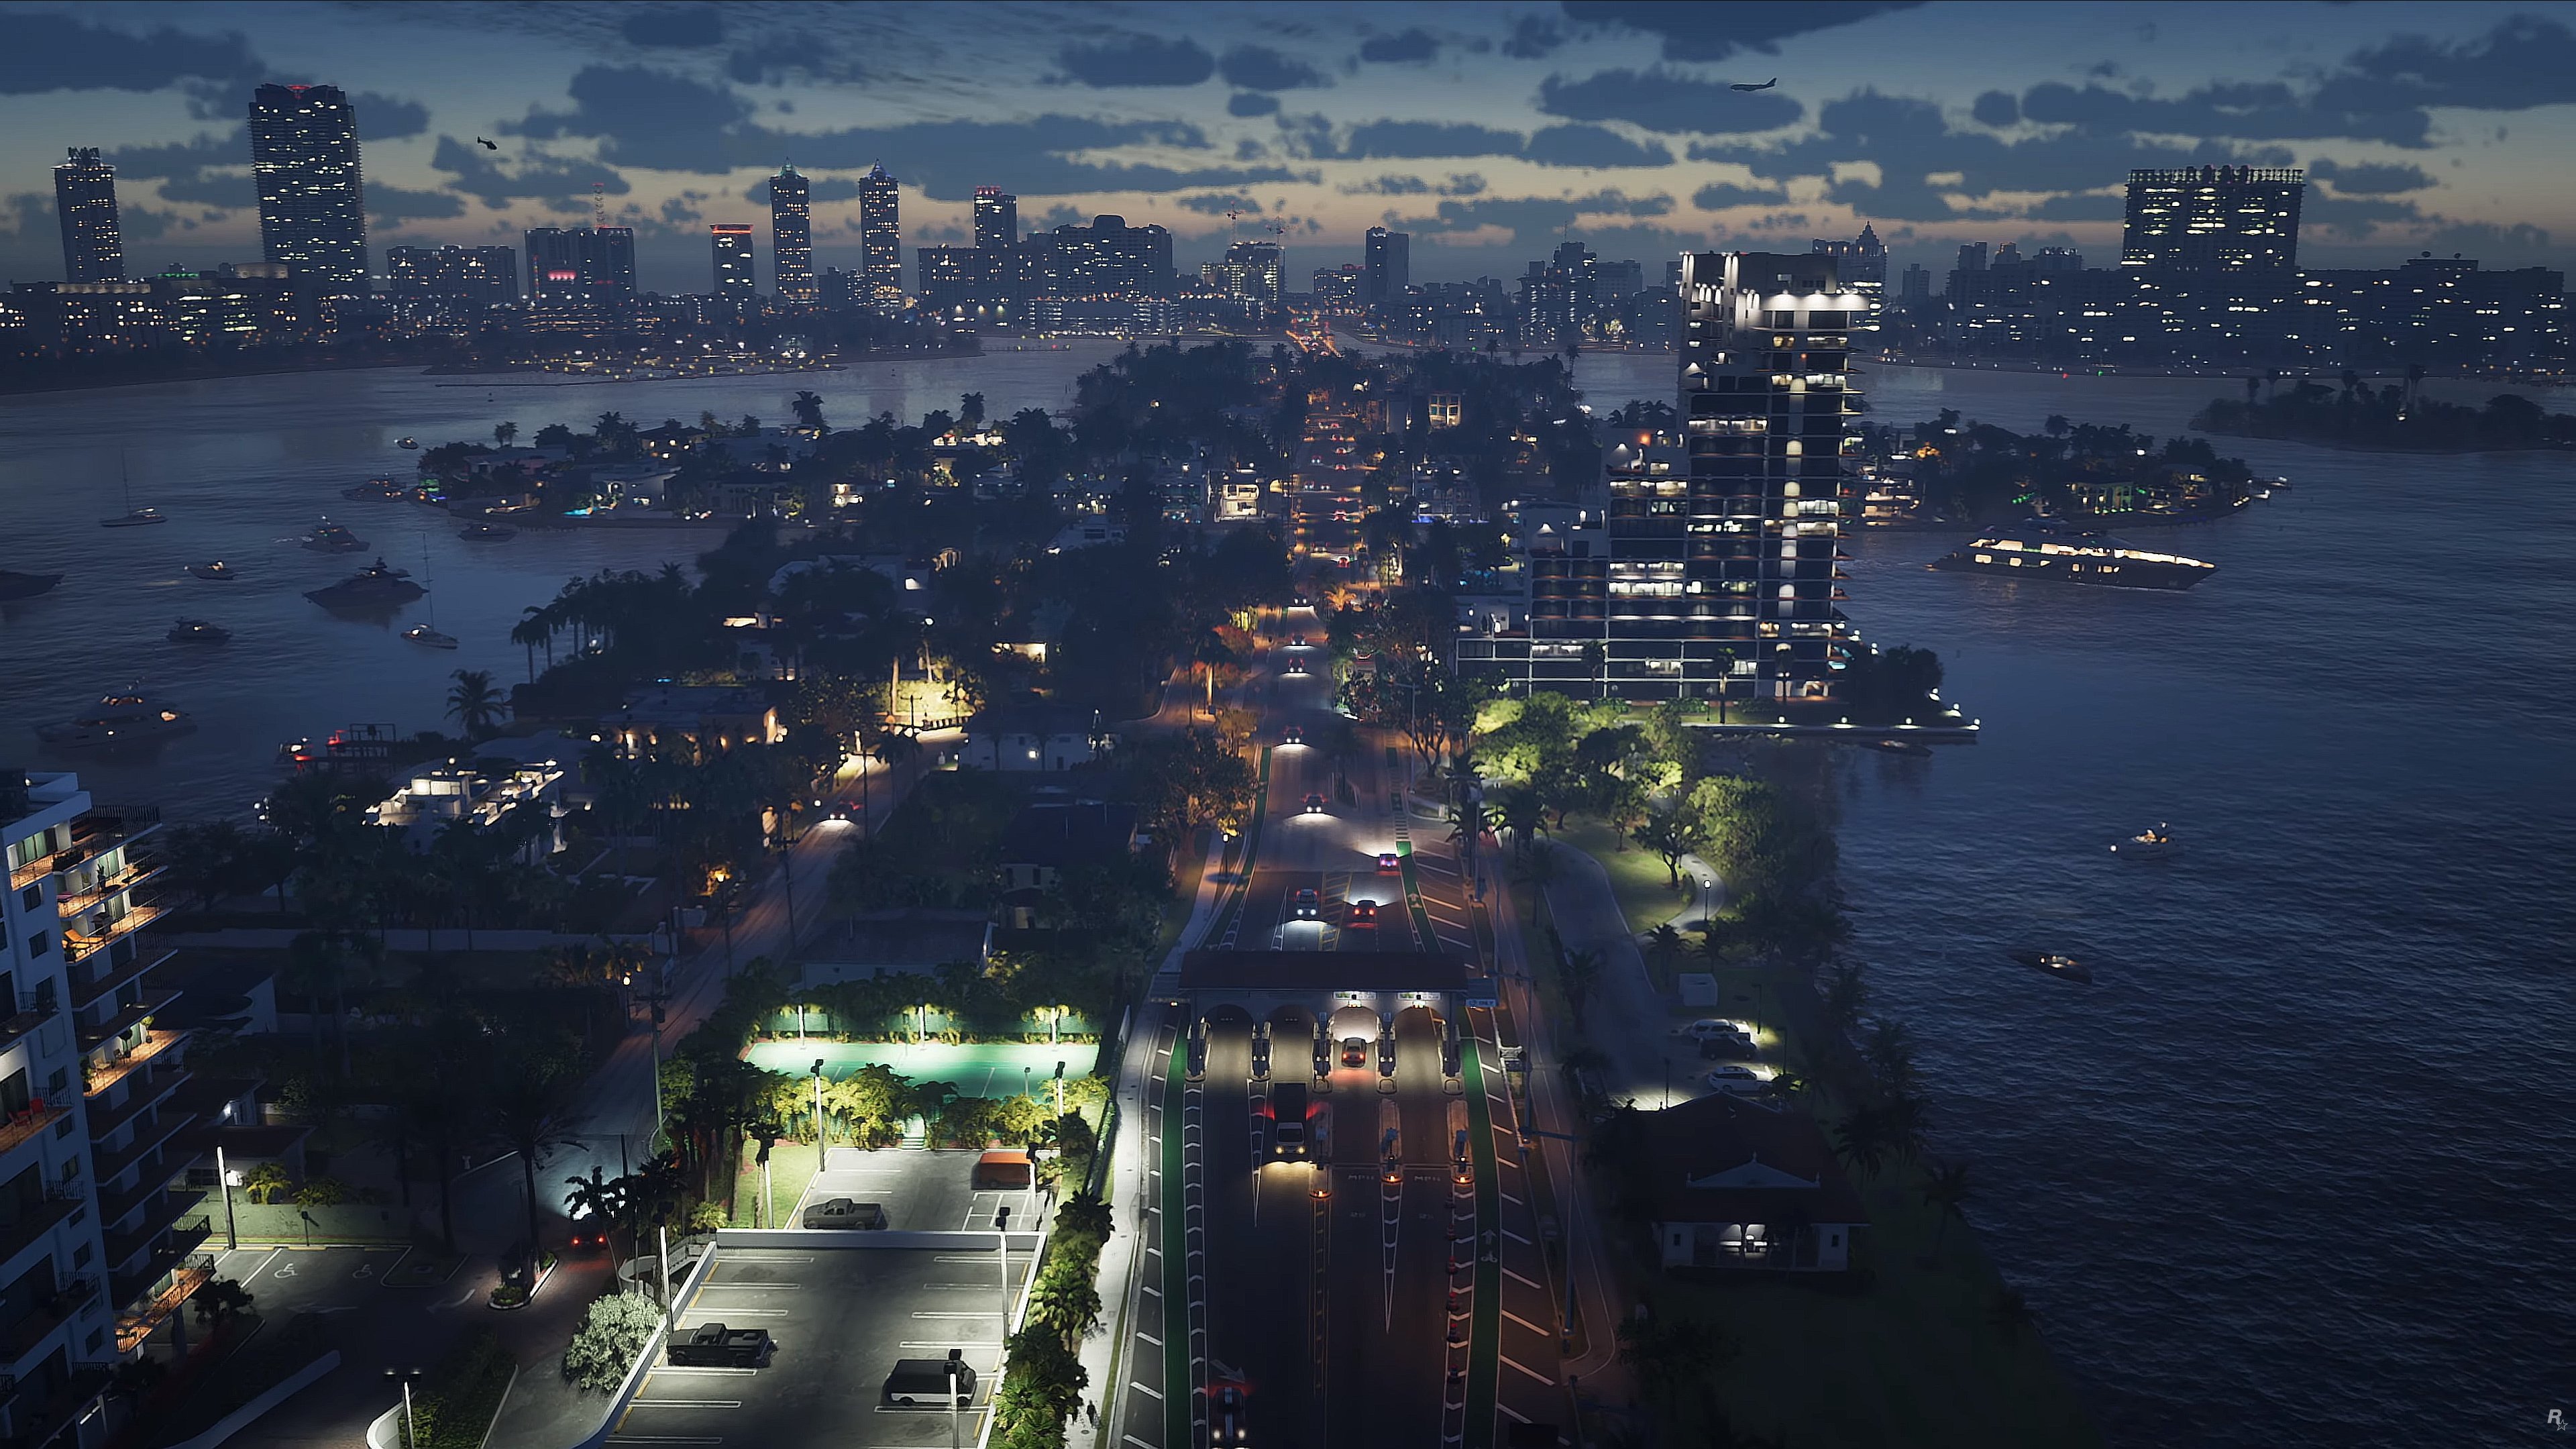 Fondos de pantalla City at night GTA 6